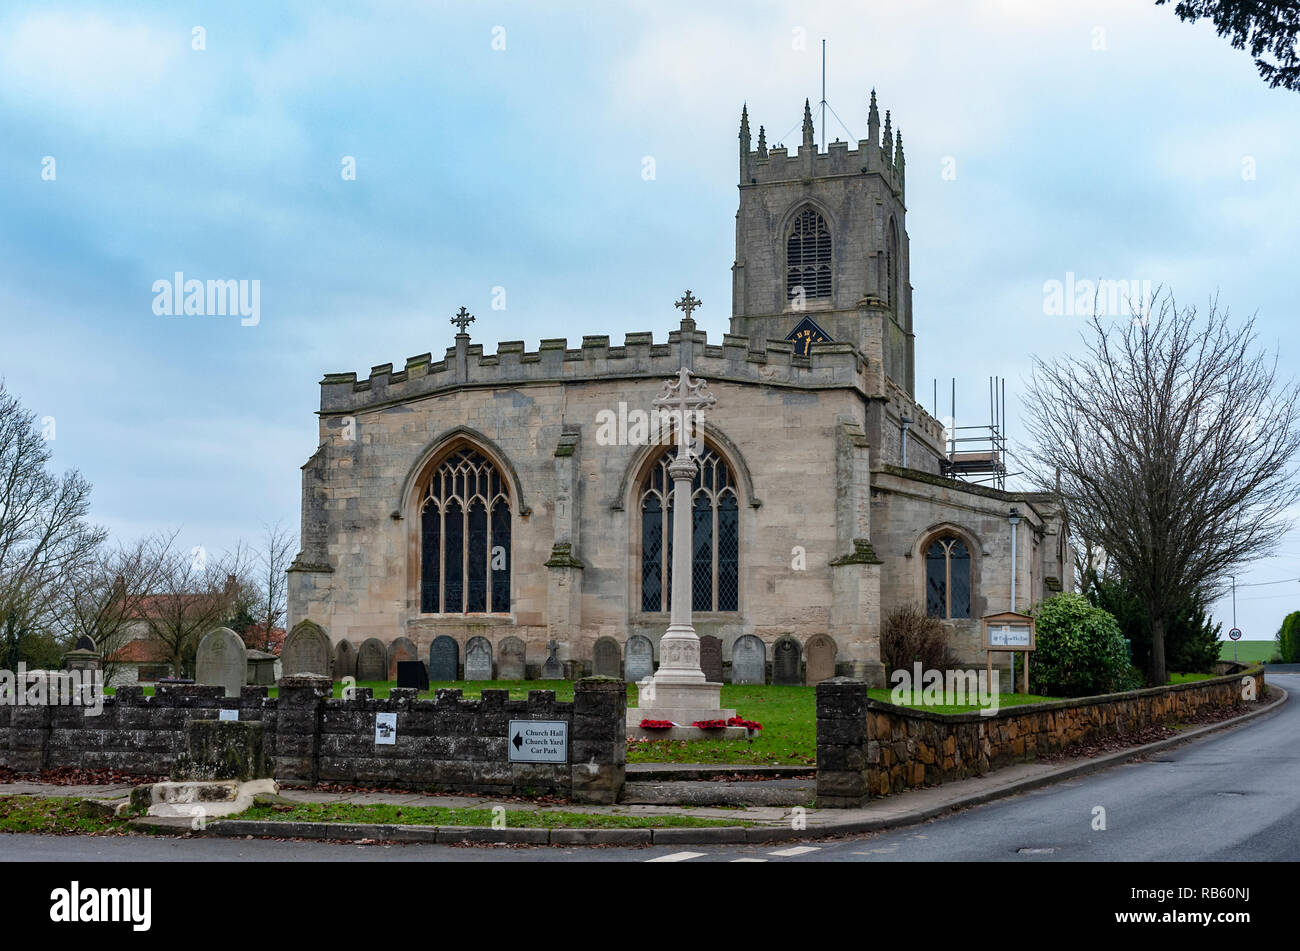 Haxey, Lincolnshire, England, UK - Das Dorf Pfarrkirche des Heiligen Nikolaus der Anblick der traditionellen alten Tradition Der haxey Haube seit dem 14. Jahrhundert. Stockfoto